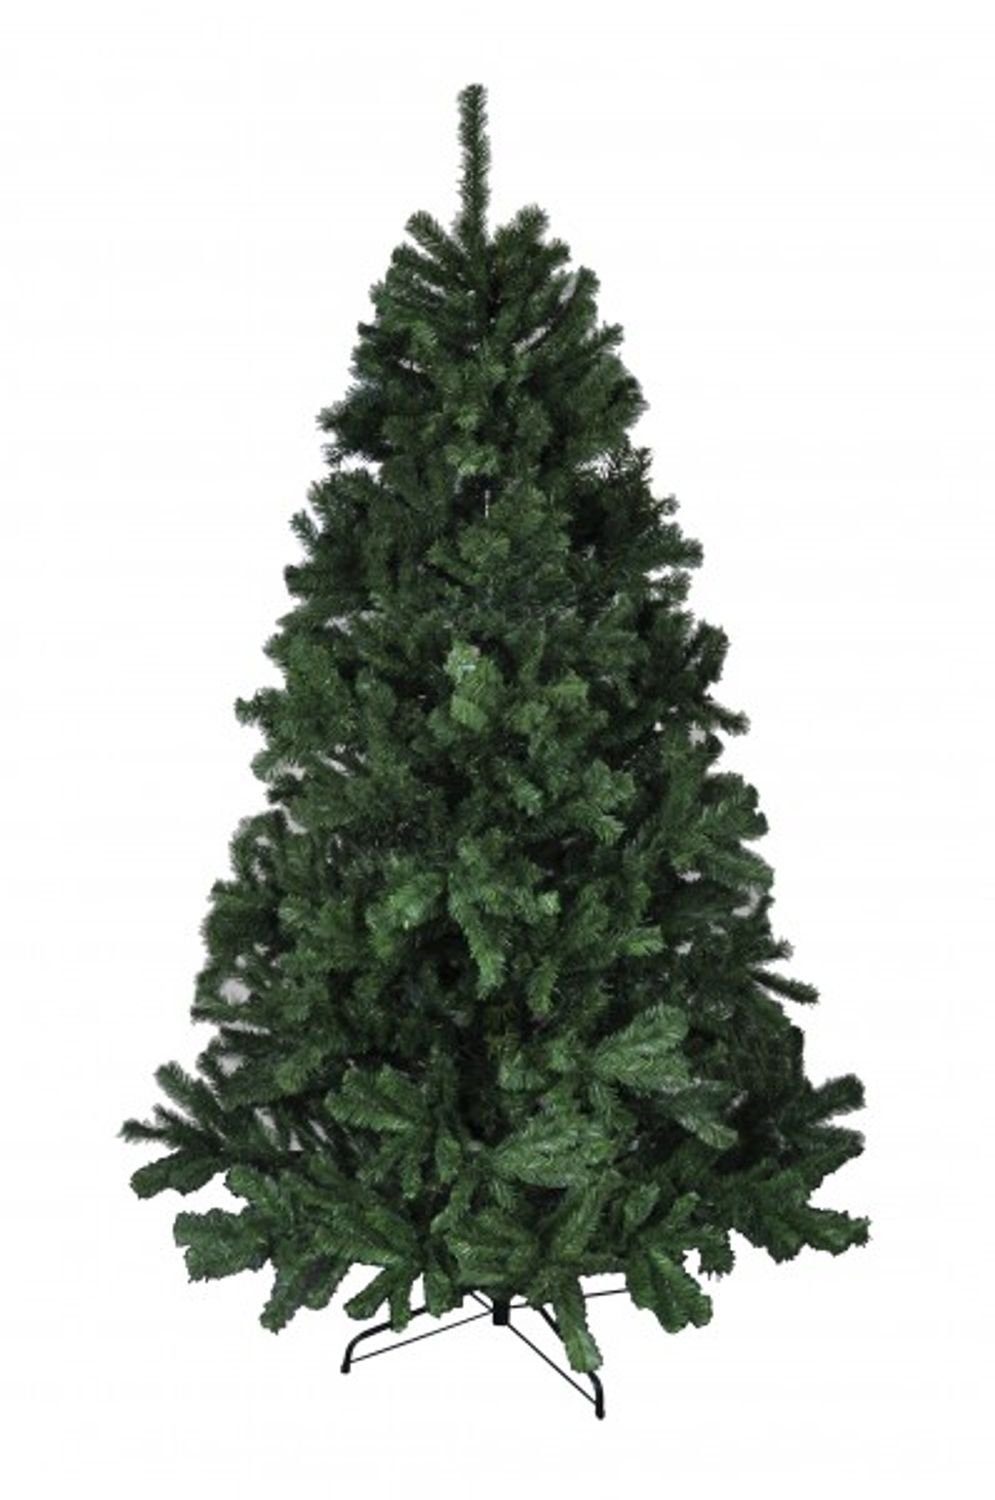 BURI Künstlicher Weihnachtsbaum BURI® Weihnachtsbaum 180cm grün Christbaum Tannenbaum Kunsttanne Kunst